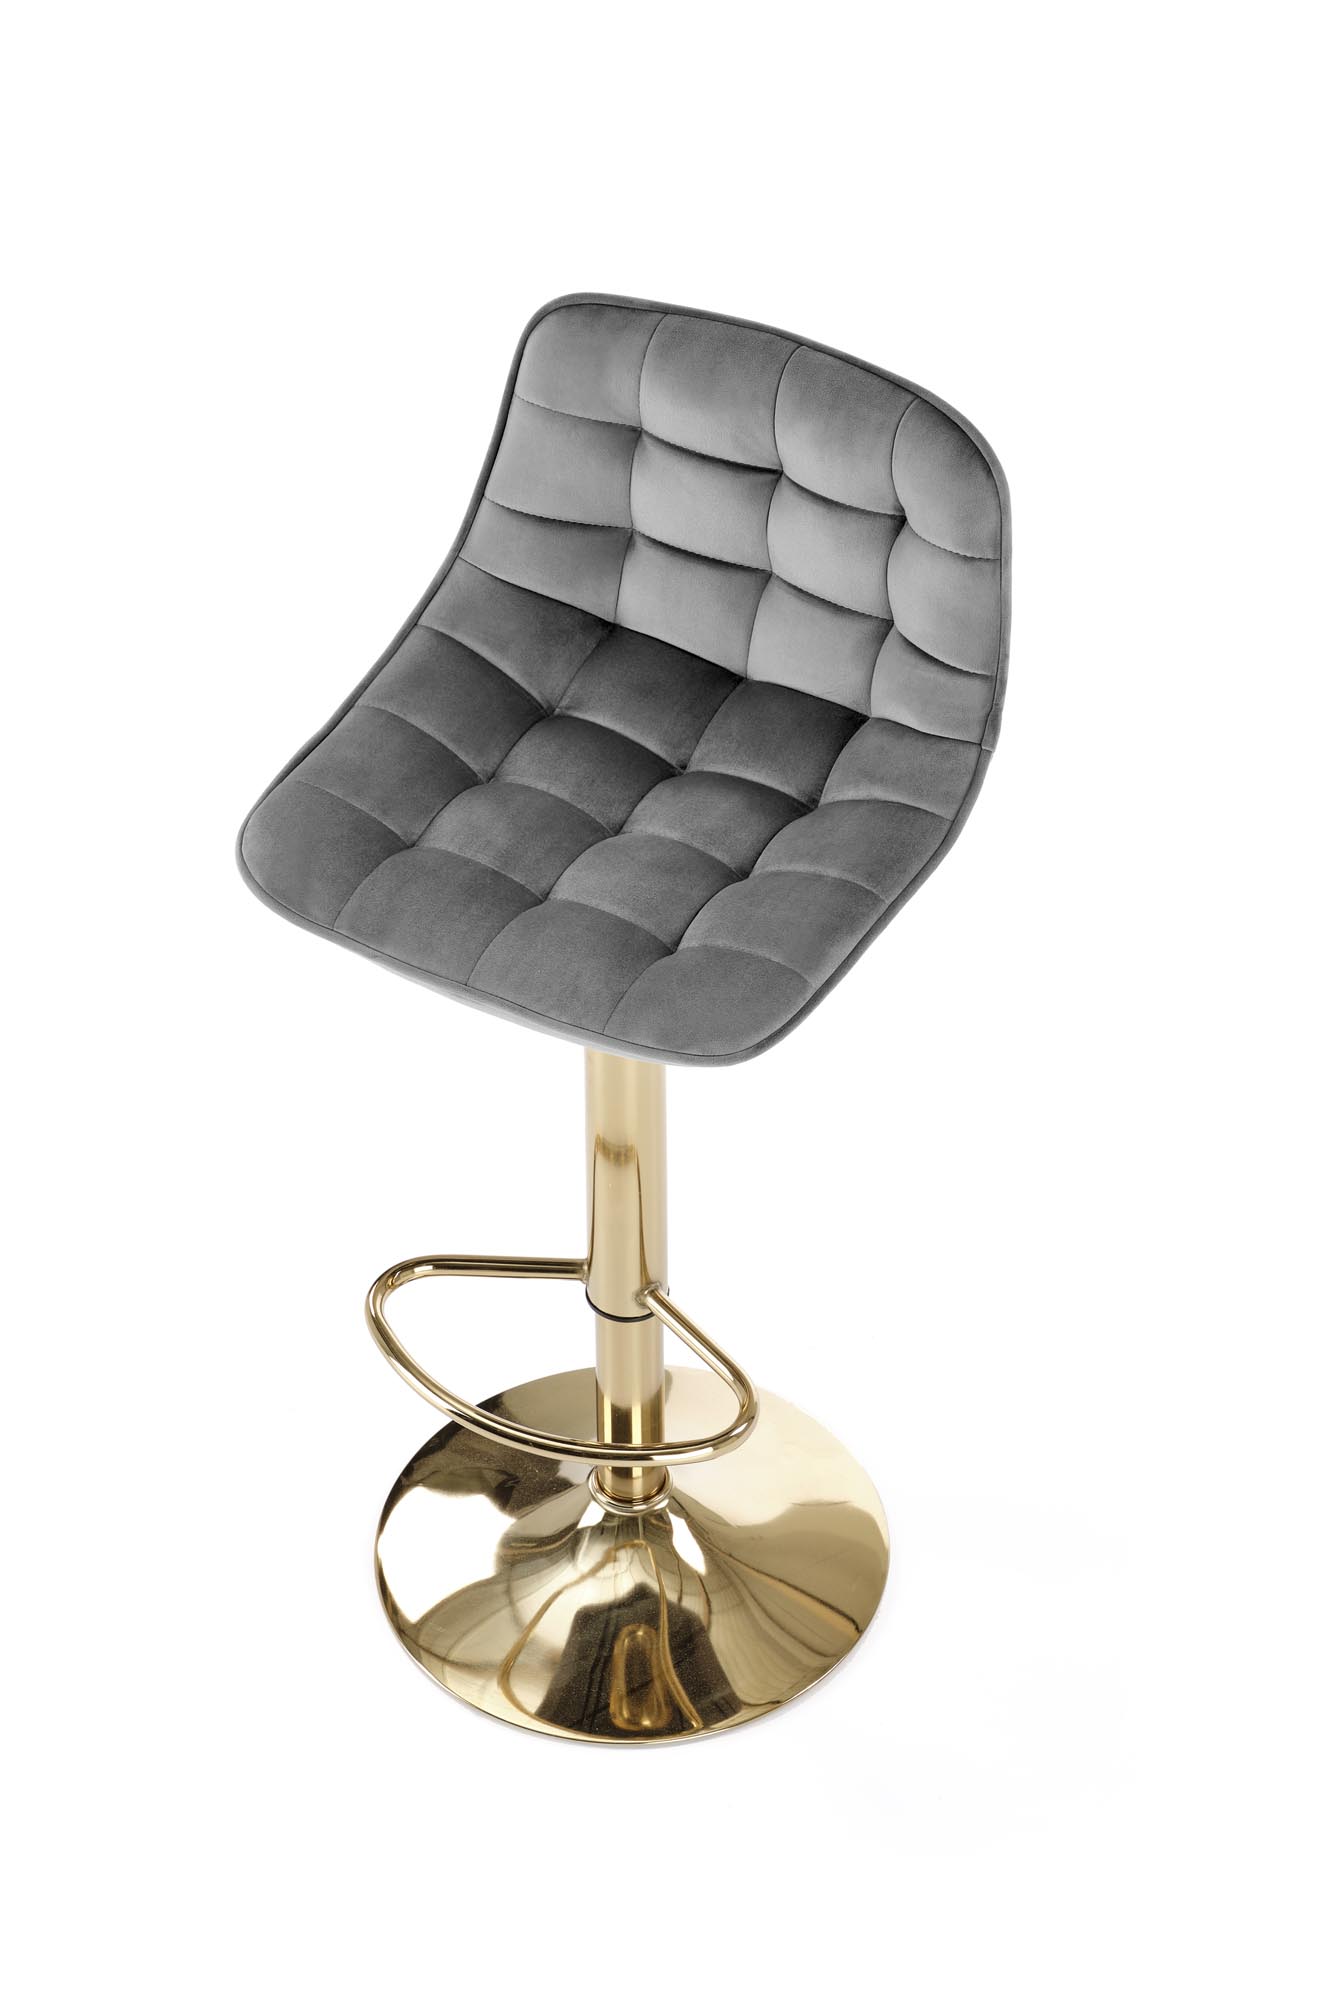 H120 Barová židle Nohy - zlaté, Sedák - tmavý popel (1p=1szt) Barová židle čalouněná h120 - tmavý popel / Podstavec